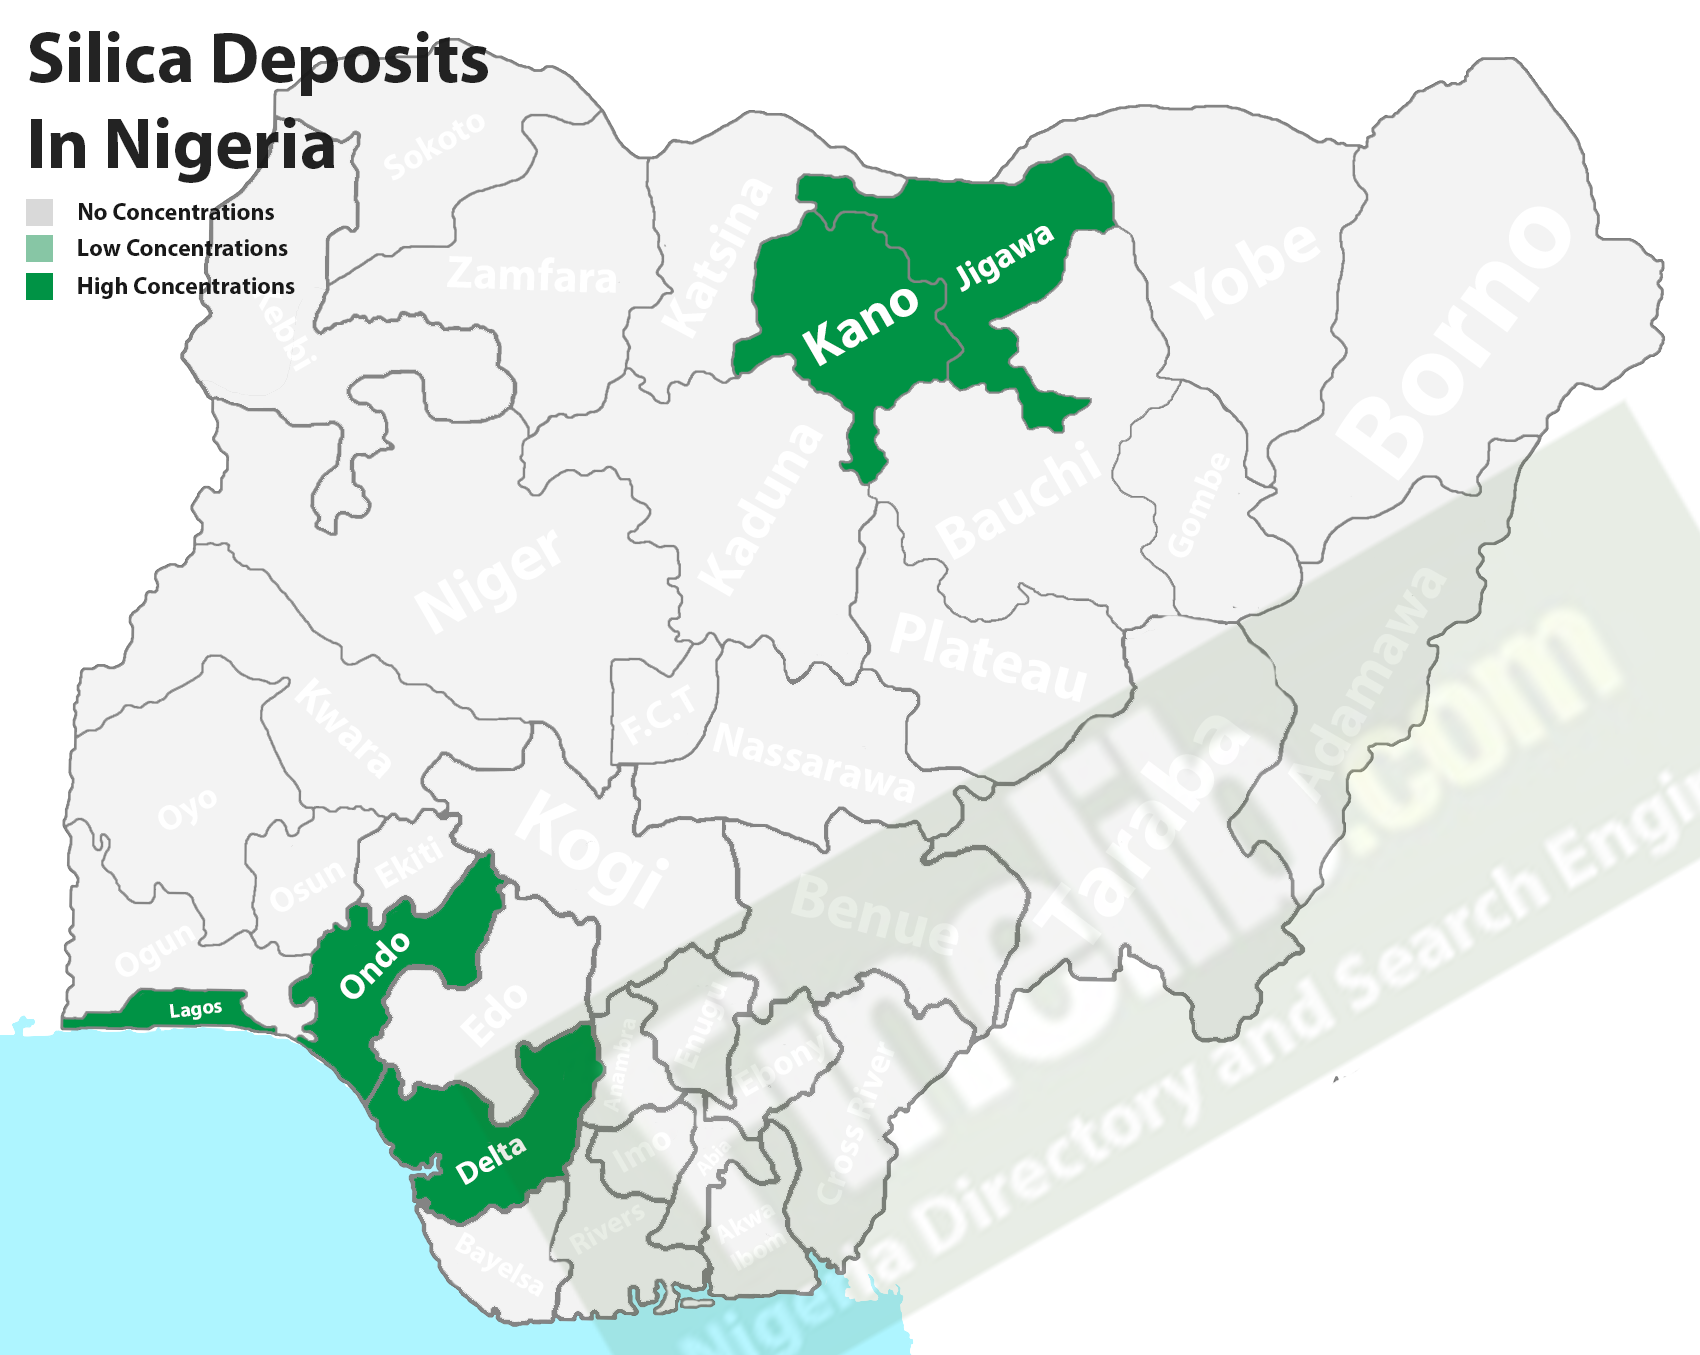 Silica deposits in Nigeria